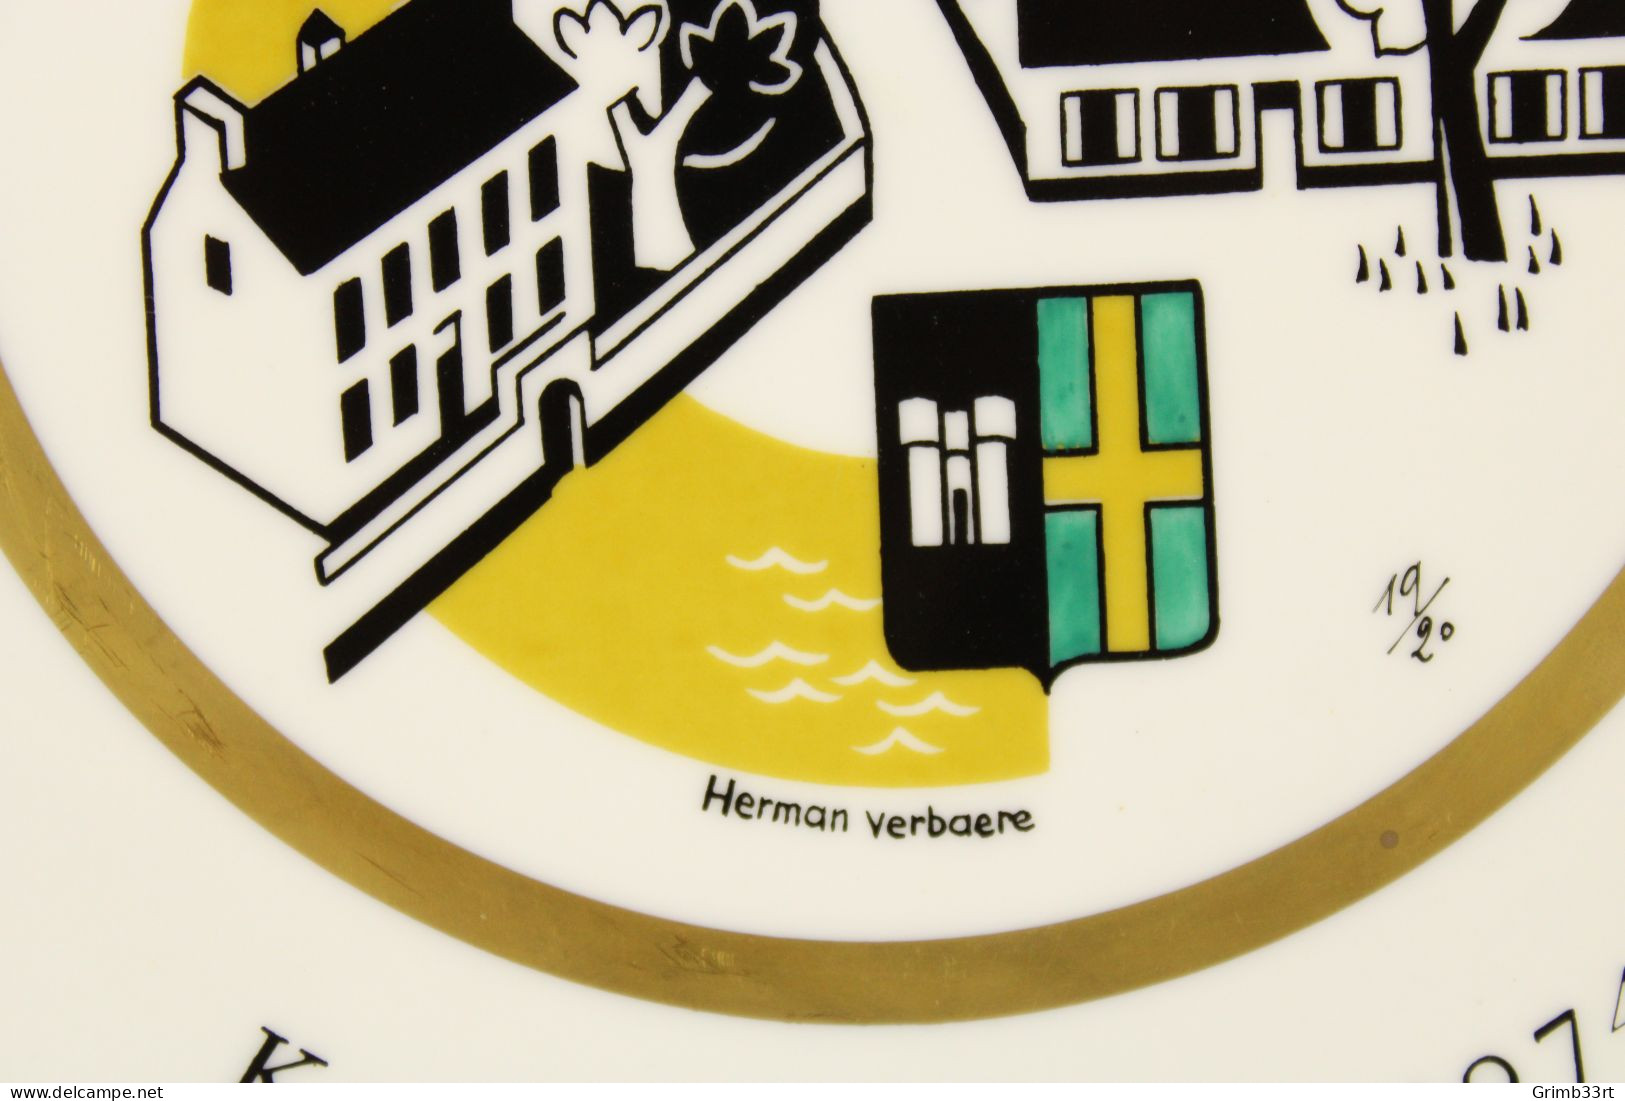 Deurle - Handbooggilde De Harlekijnen - 1974 - Herman Verbaere 19/20 - Sierbord Schuttersgilde - Boogschieten - 25.1 Cm - Tiro Al Arco